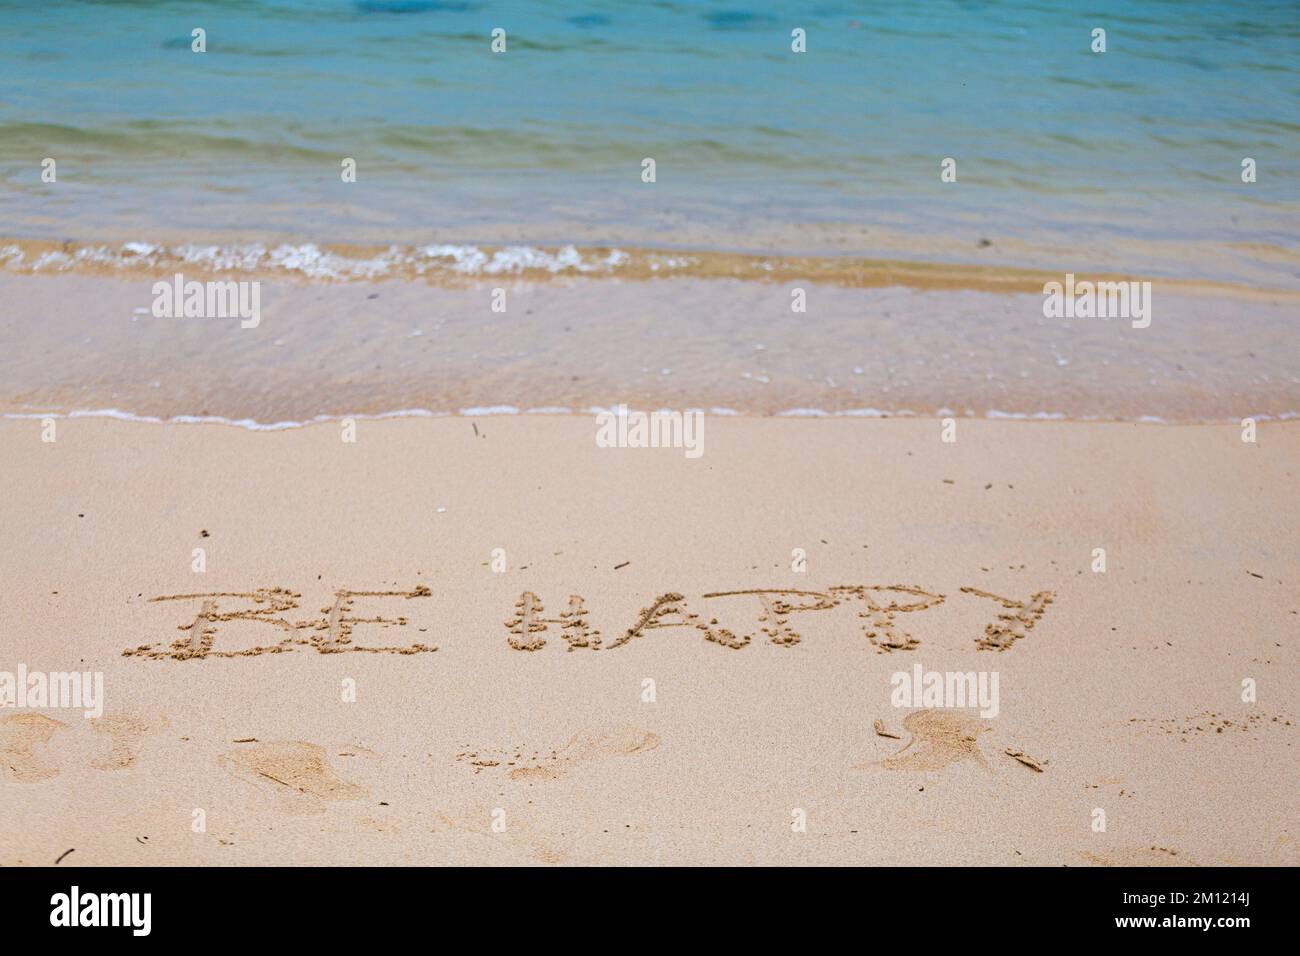 Seien Sie glücklich - wie eine Nachricht mit einem Finger im Sand geschrieben an einem Strand mit Wellen und blauem Ozean auf Mauritius Island, Afrika, Draufsicht, niemand Stockfoto